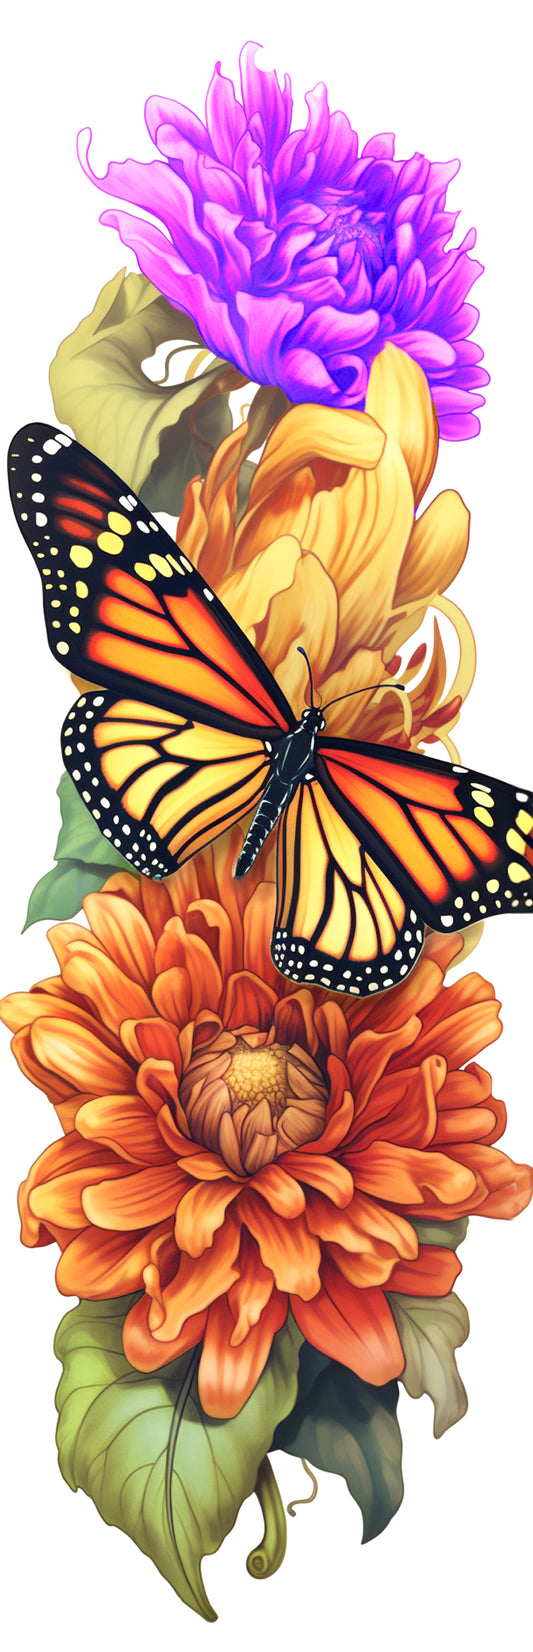 Monarch Butterfly on Flowers